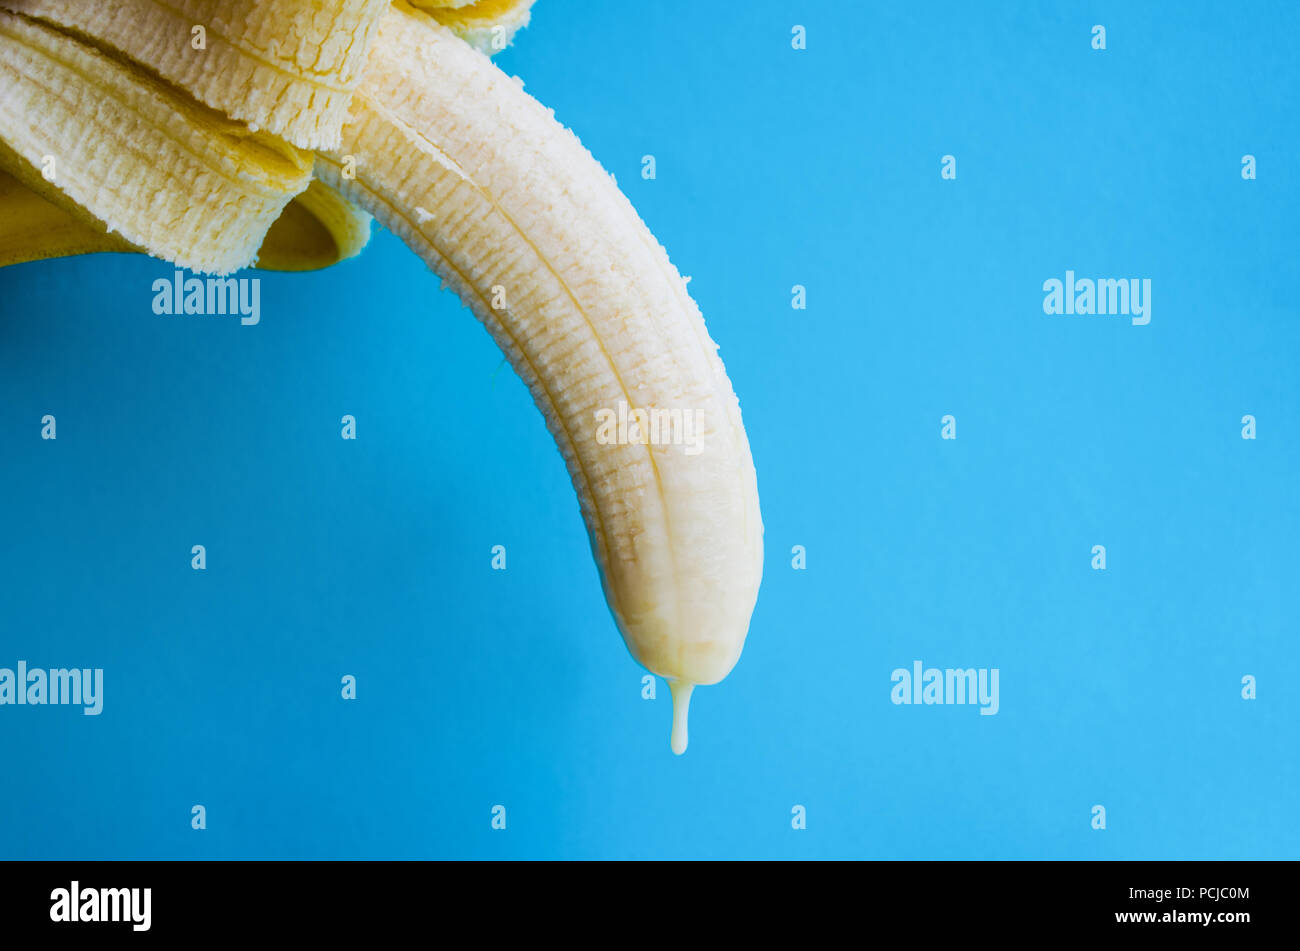 Plátano con leche condensada. Concepto de pene y semen Fotografía de stock  - Alamy